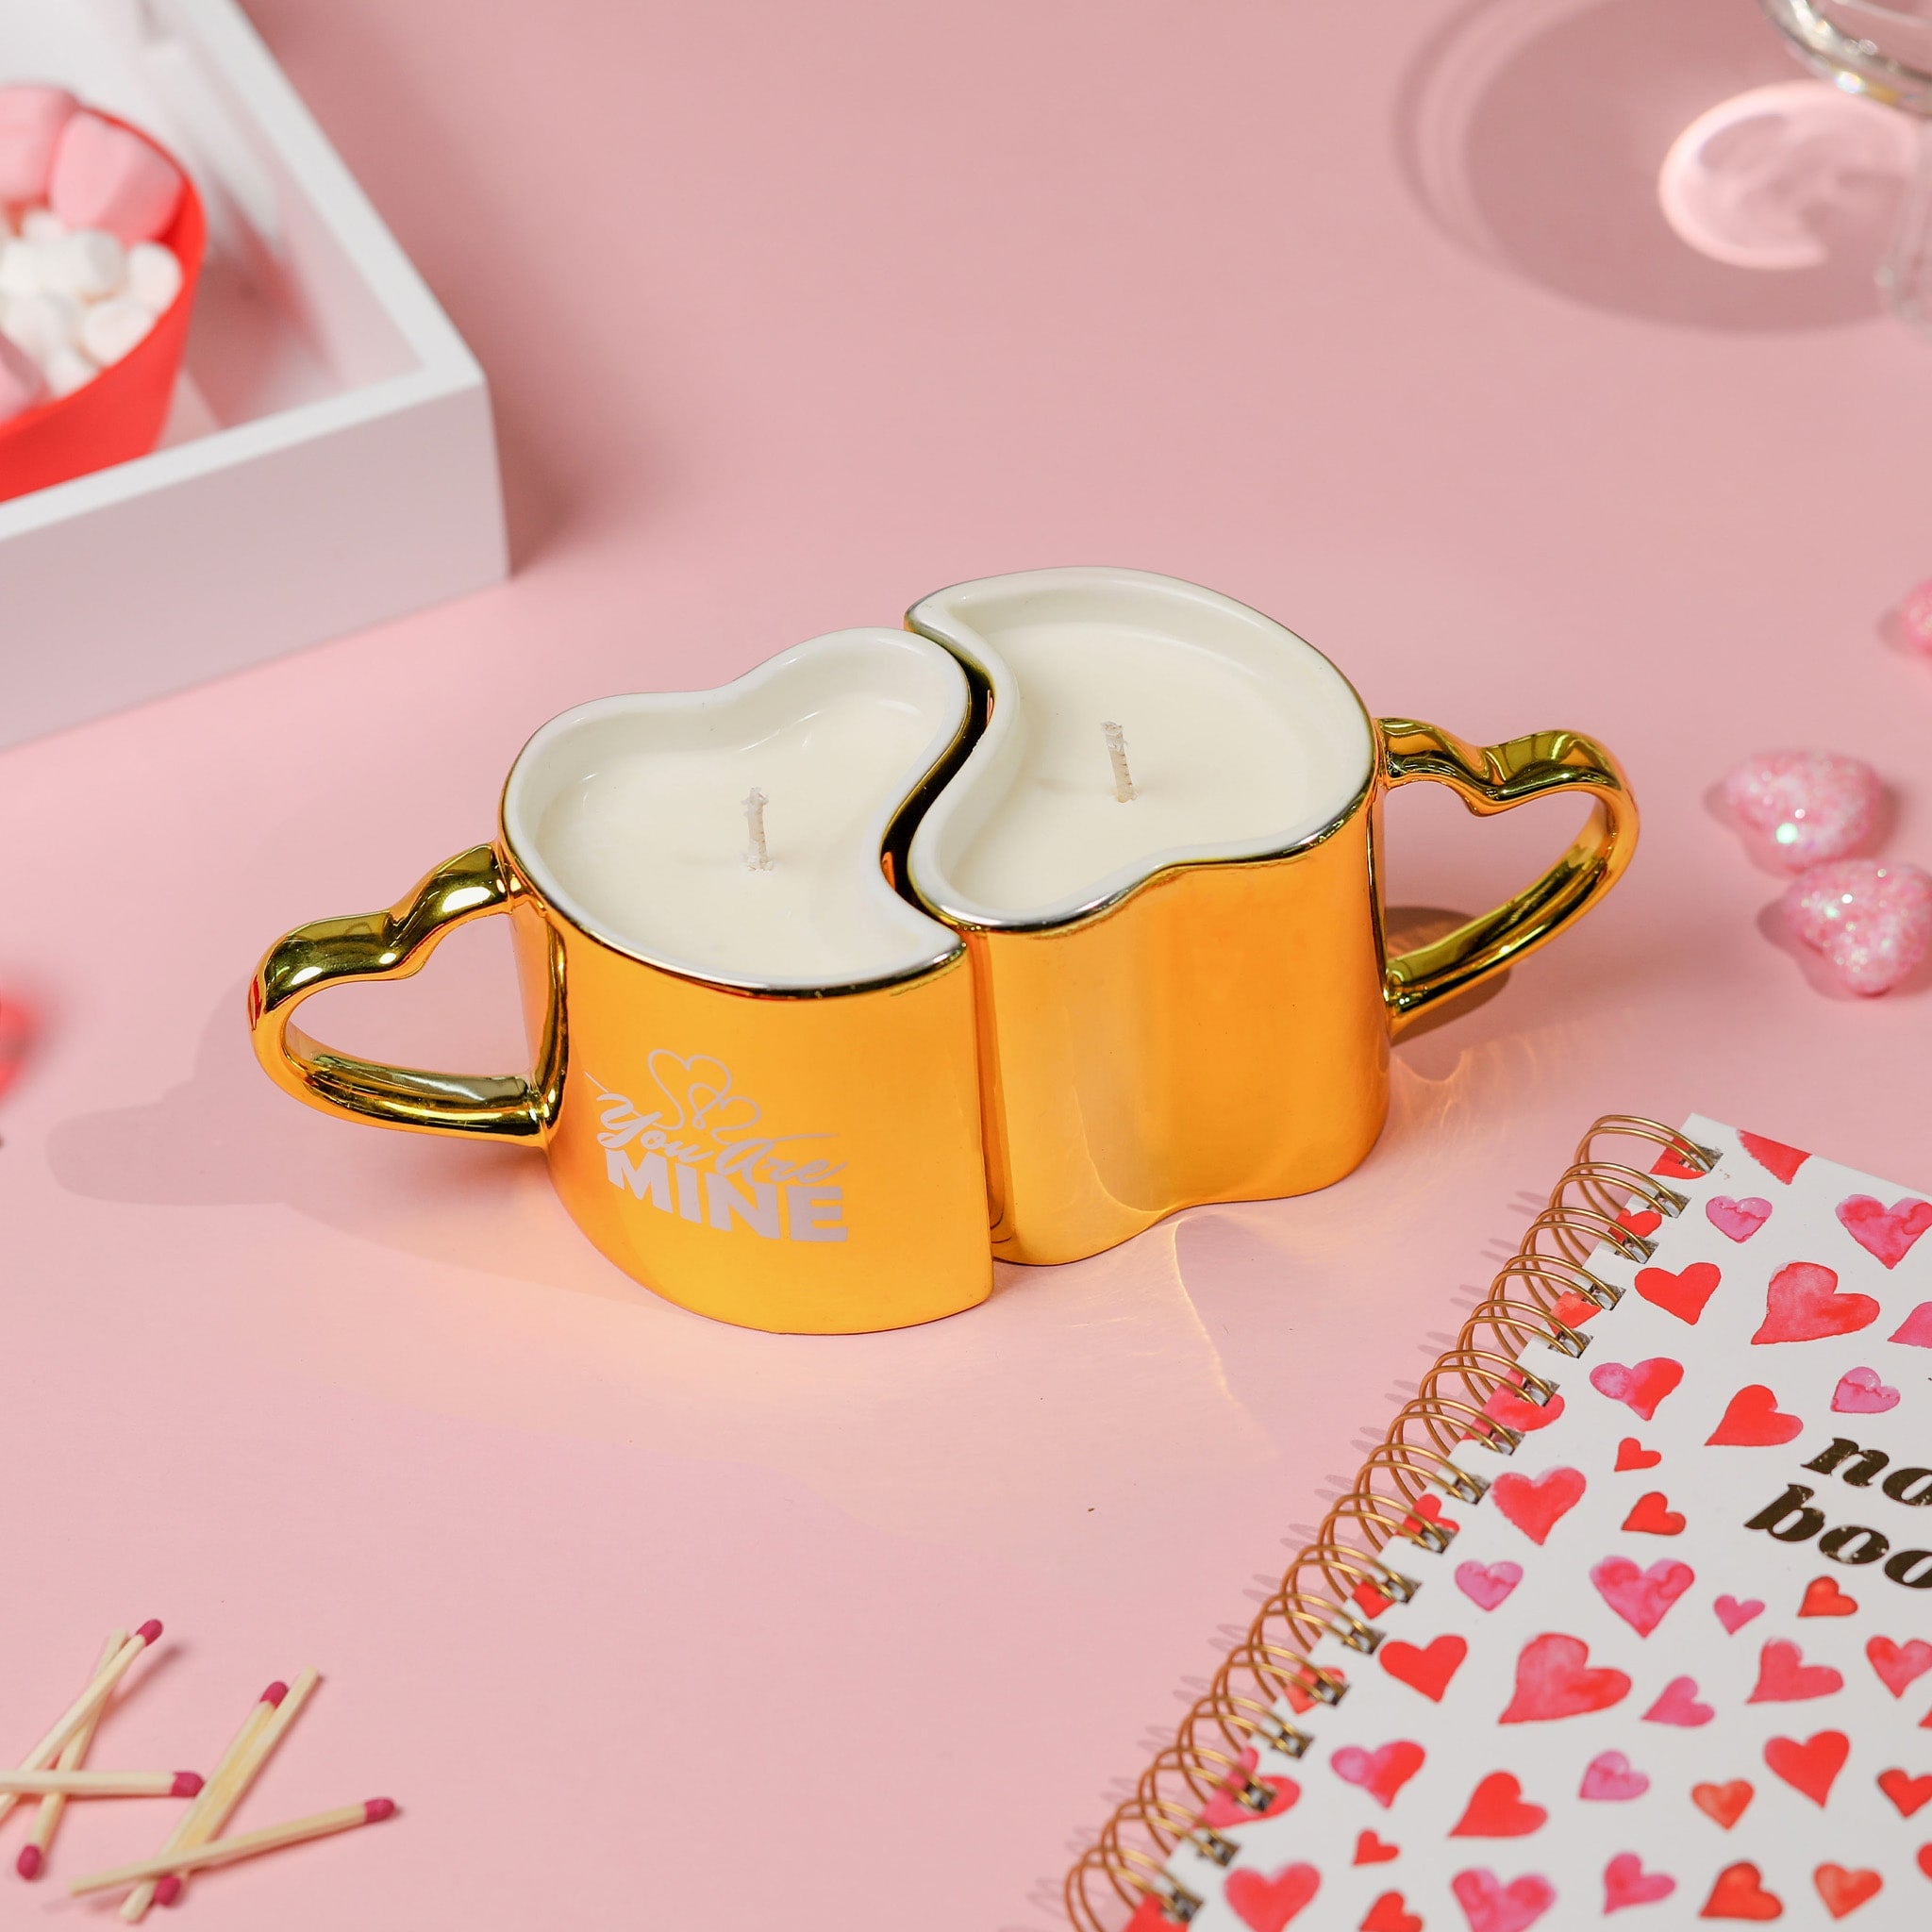 His+Hers Love Mugs Reusable Coffee Mug Diamond Candle